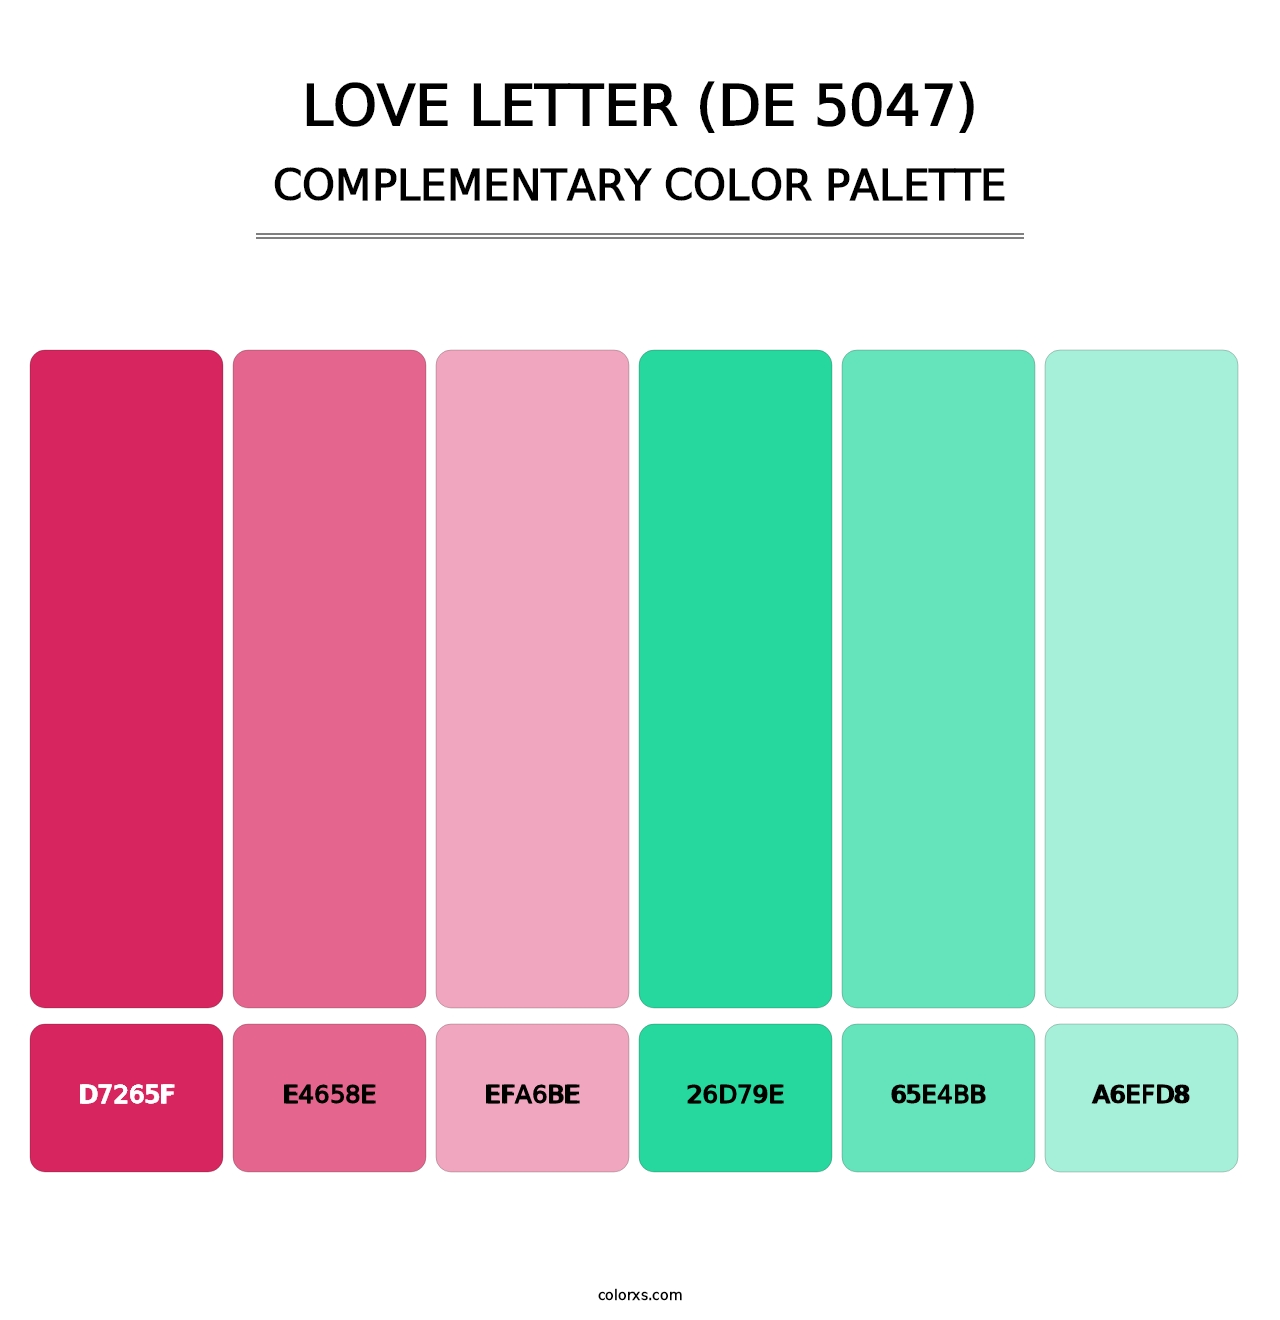 Love Letter (DE 5047) - Complementary Color Palette